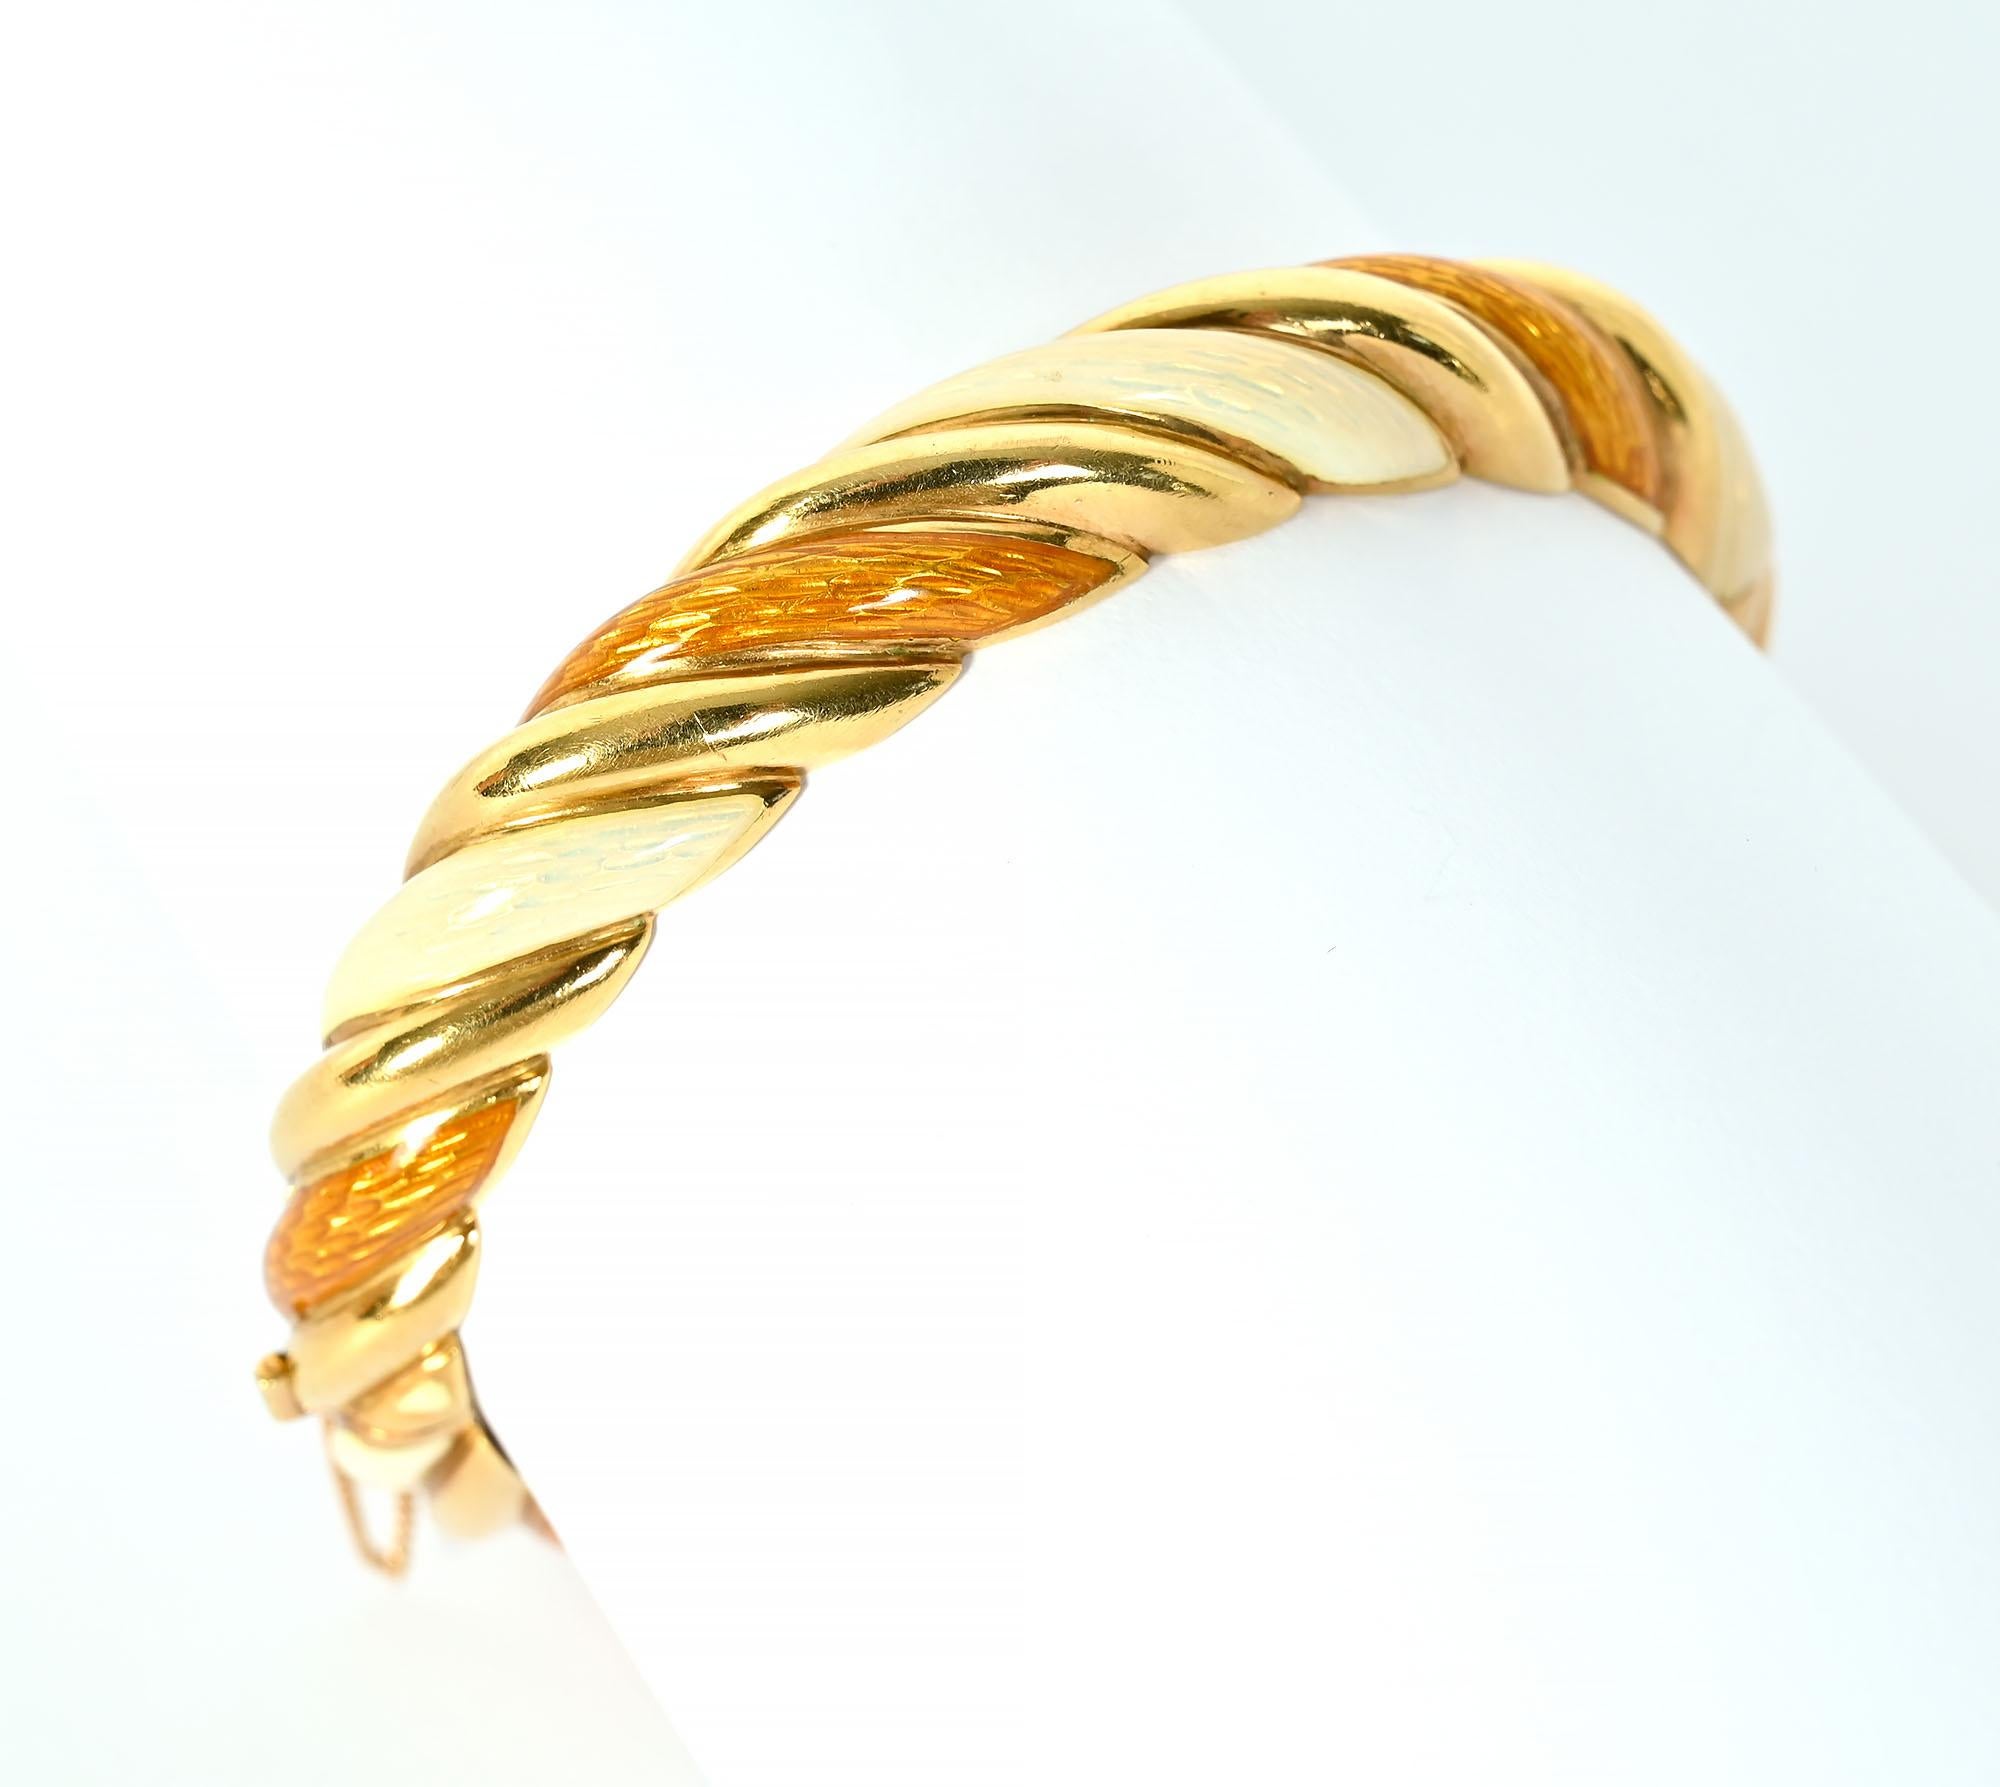 Bracelet Tiffany en émail avec des couleurs inhabituelles. Il  comporte trois bandes torsadées - l'une en or et les deux autres en émail nacré dans les tons ivoire et ambre. Le bracelet à charnière est doté d'un fermoir et d'une chaîne de sécurité. 